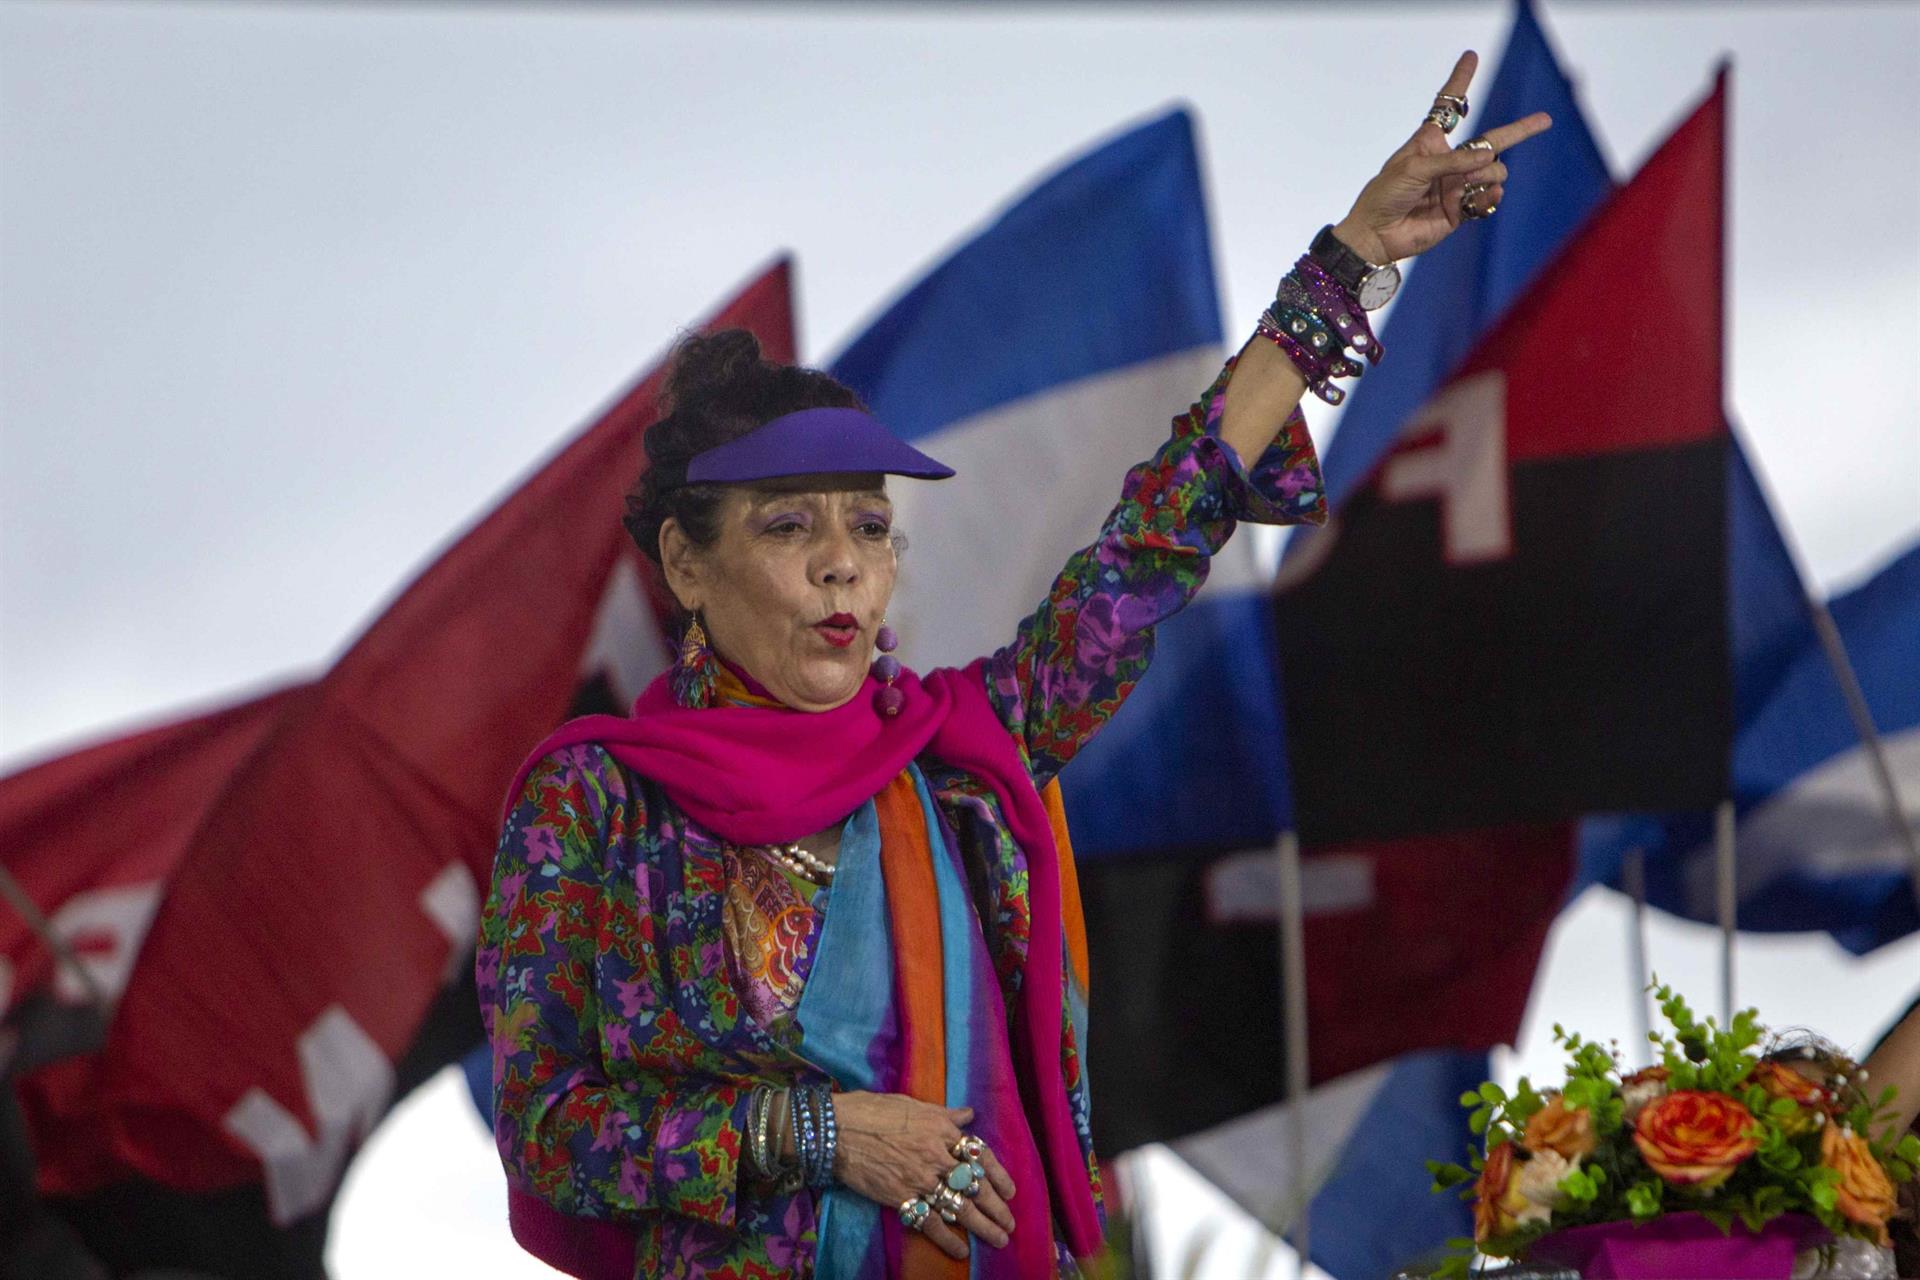 Le dolió: Vicepresidenta de Nicaragua calificó como un castigo sanciones en su contra